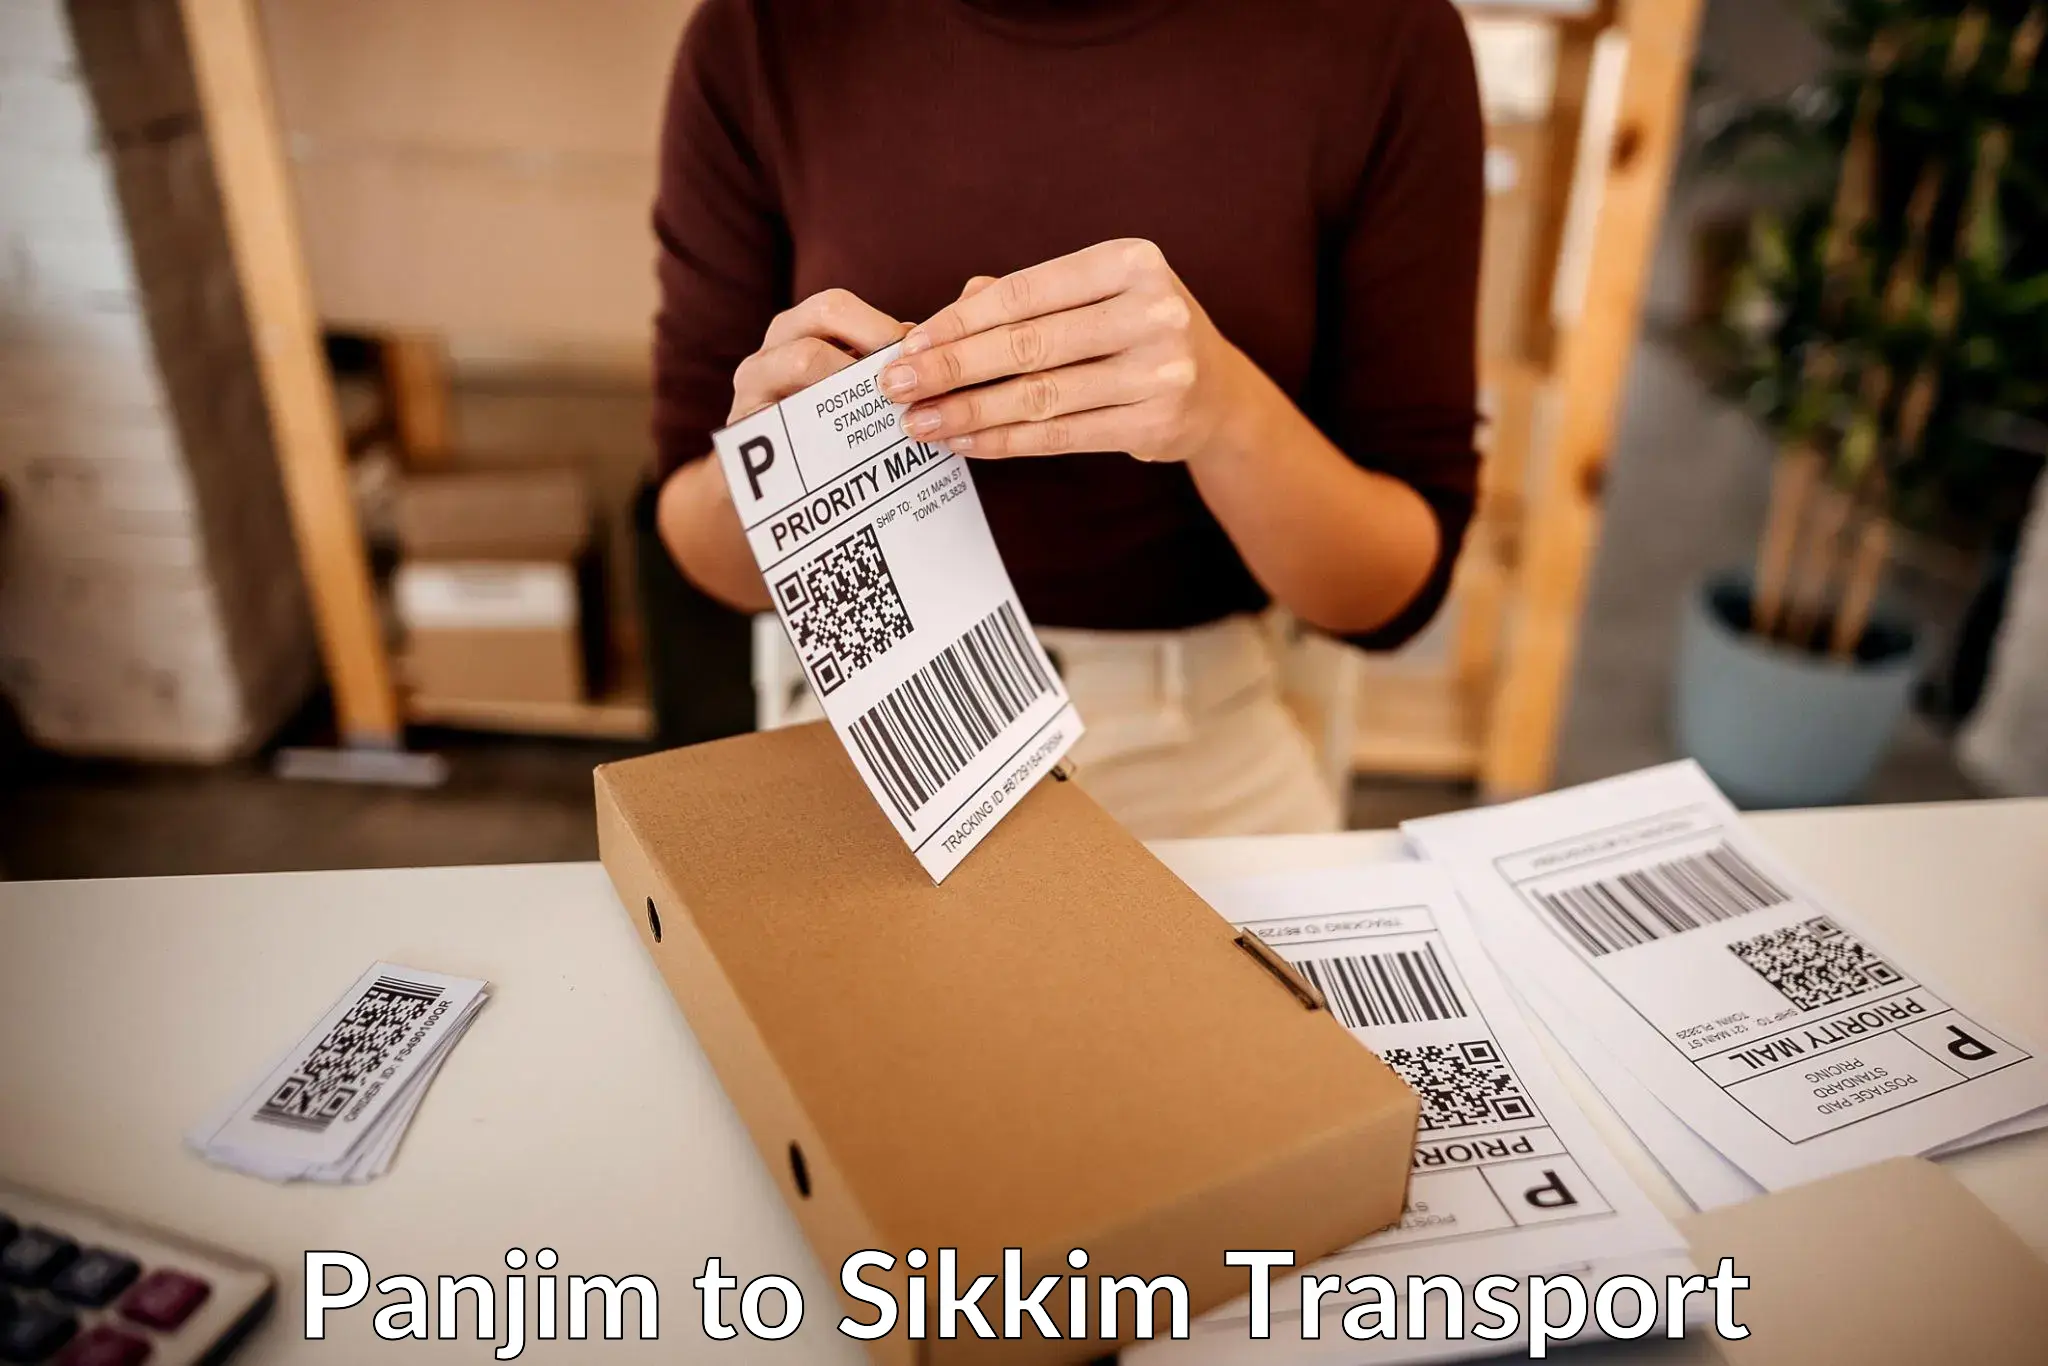 Bike shipping service Panjim to North Sikkim